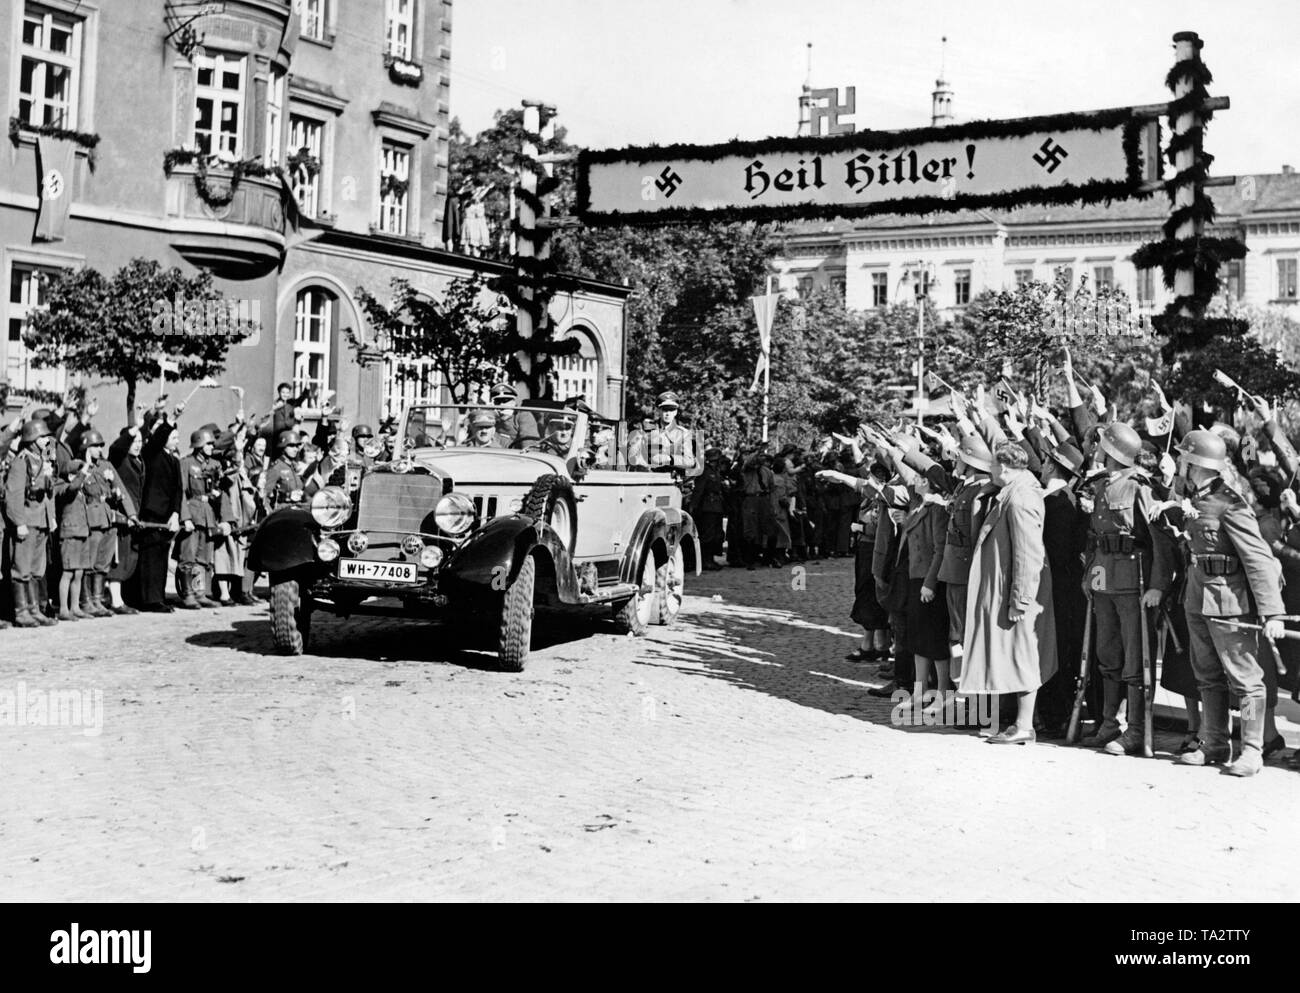 Adolf Hitler (avant gauche de la voiture) sur une visite à Jaegerndorf (aujourd'hui Krnov) le 7 octobre 1938, lors de l'occupation des Sudètes par l'Allemagne. La population reçoit lui gaiement en lui donnant le salut nazi. Au-dessus de la rue, une bannière avec l'inscription : "Heil Hitler !" Banque D'Images